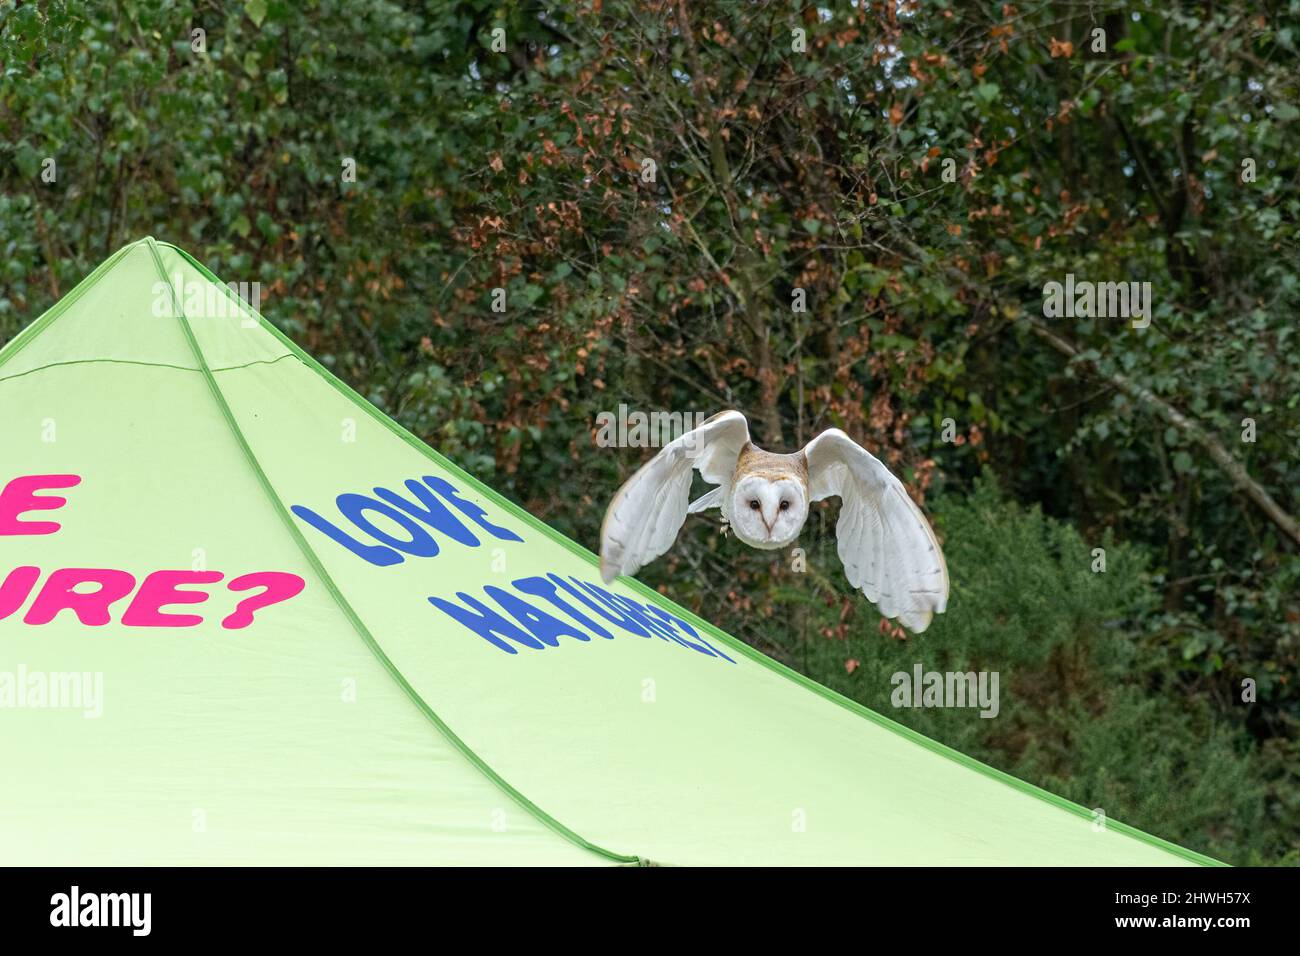 Hibou de la grange survolant une tente avec Love nature sur elle, lors d'un spectacle de campagne, Royaume-Uni. Démonstration de vol d'oiseaux de proie. Banque D'Images